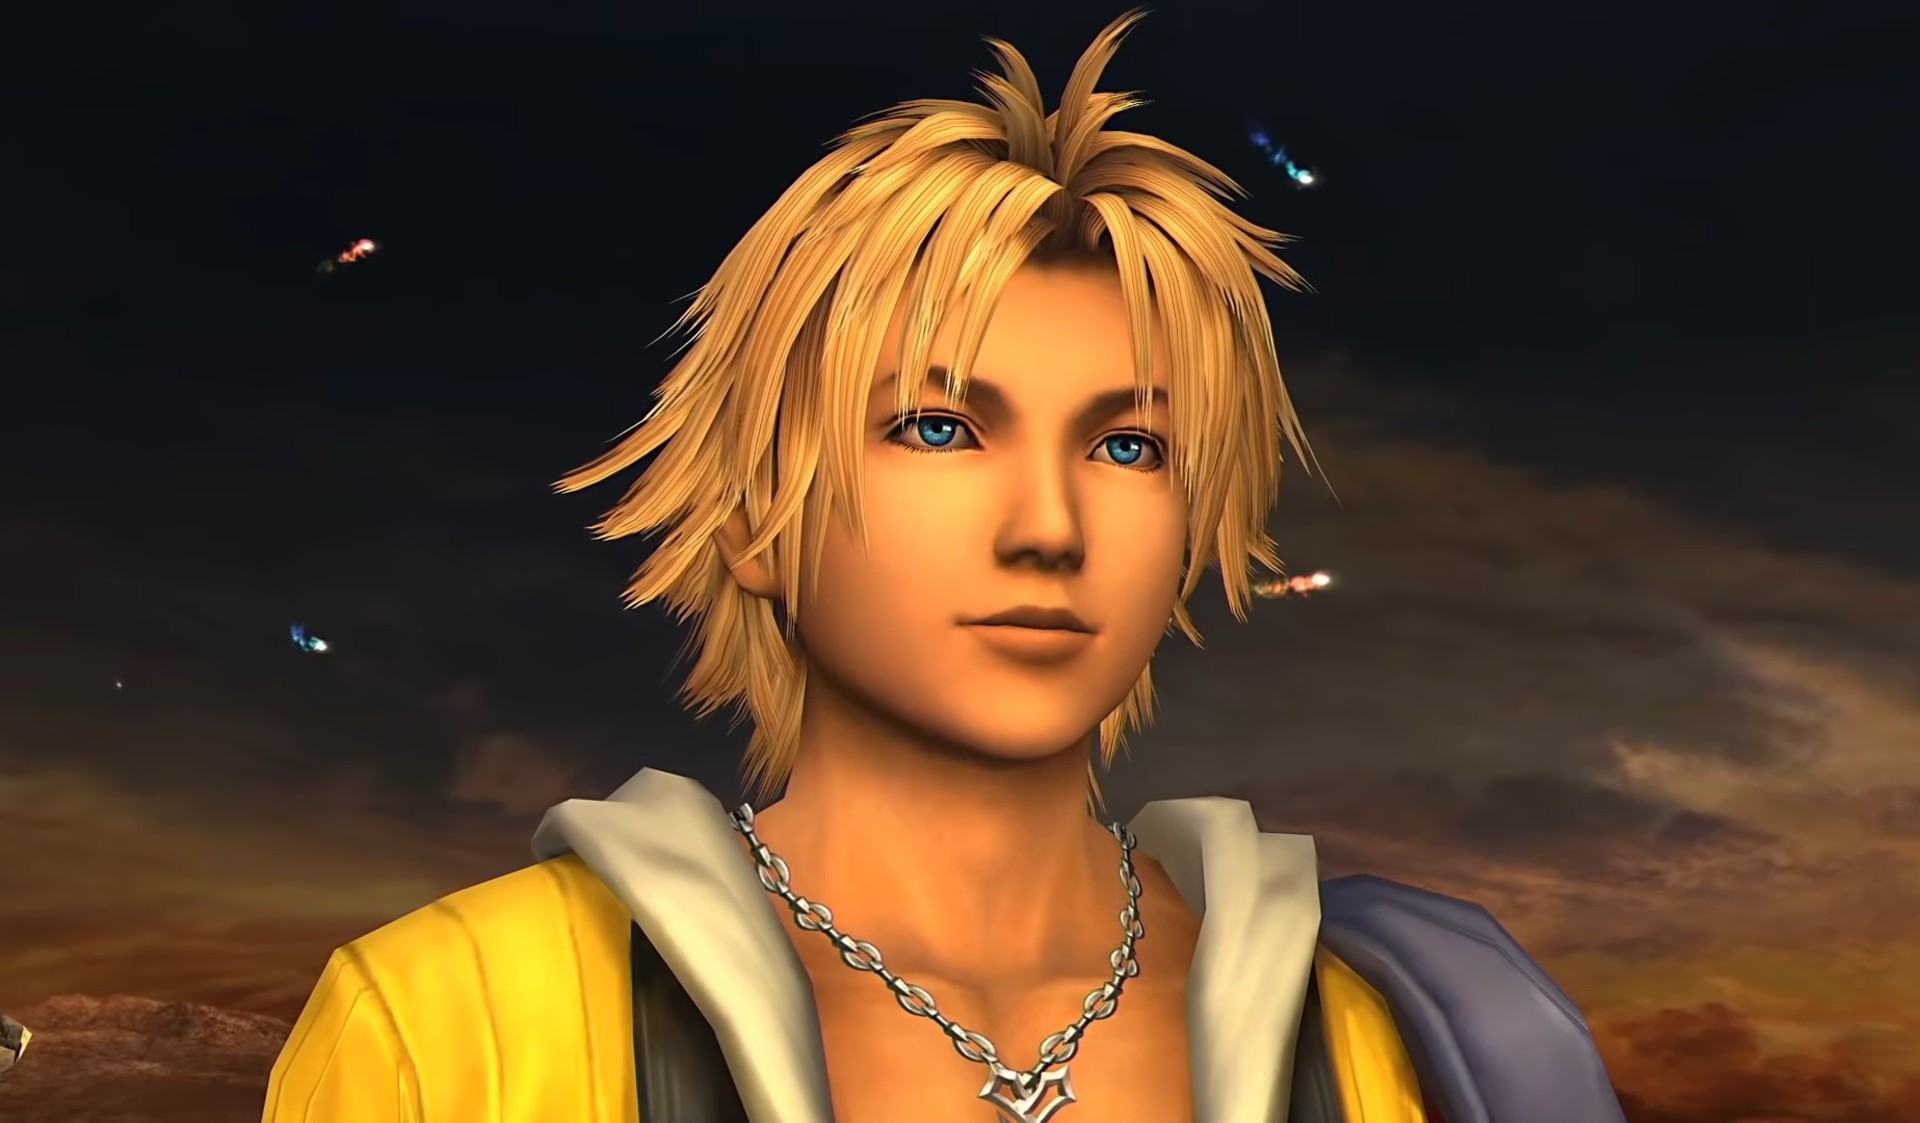 เดิมที Tidus ใน Final Fantasy 10 ถูกวางเป็นช่างประปา ก่อนเปลี่ยนเป็นนักกีฬาในตอนหลัง